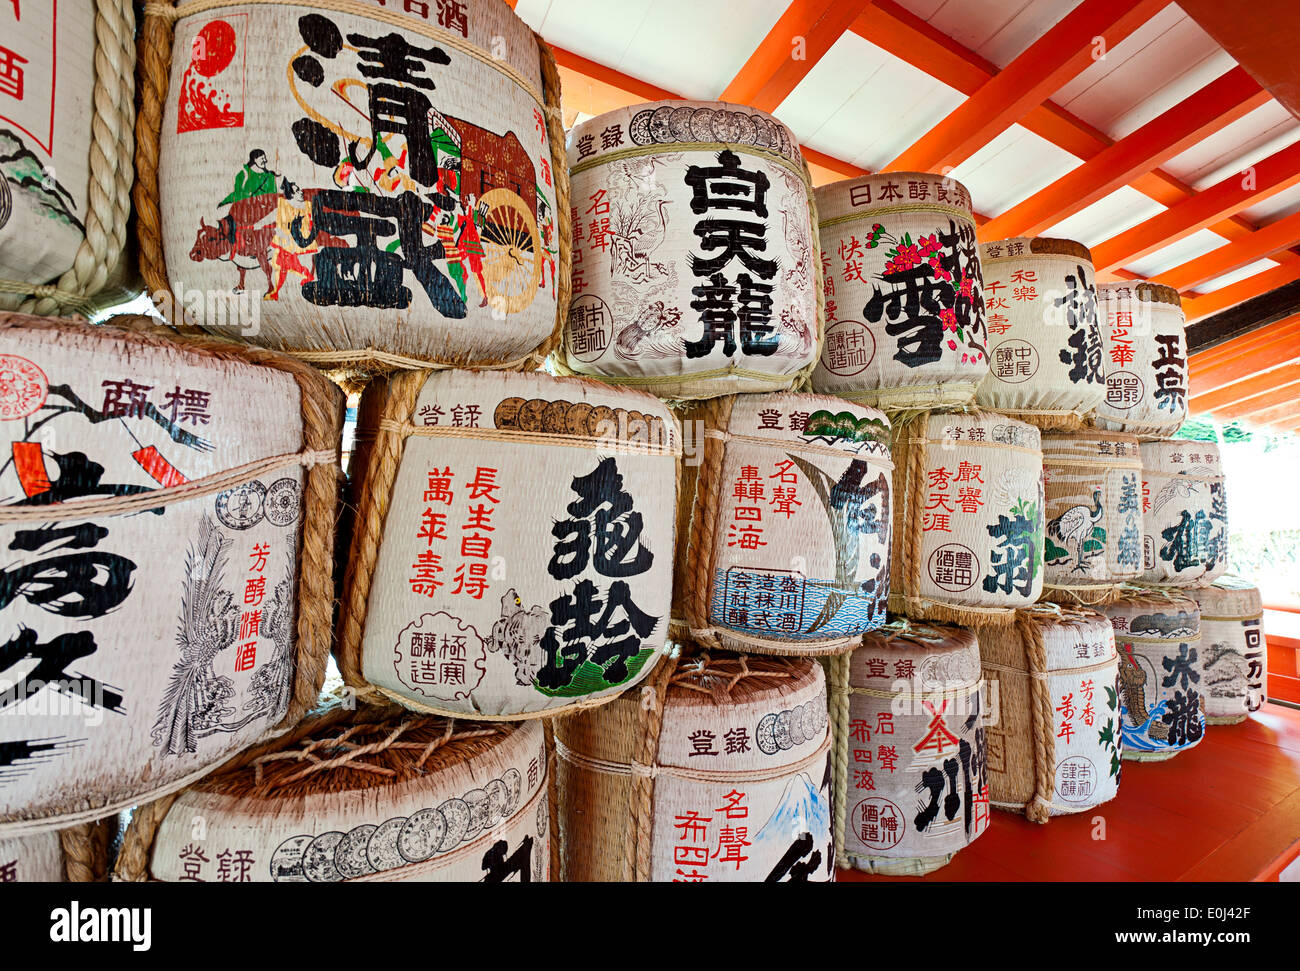 Sake barrels at Itsukushima Shrine, Miyajima Island, UNESCO World Heritage Site, Japan. Stock Photo